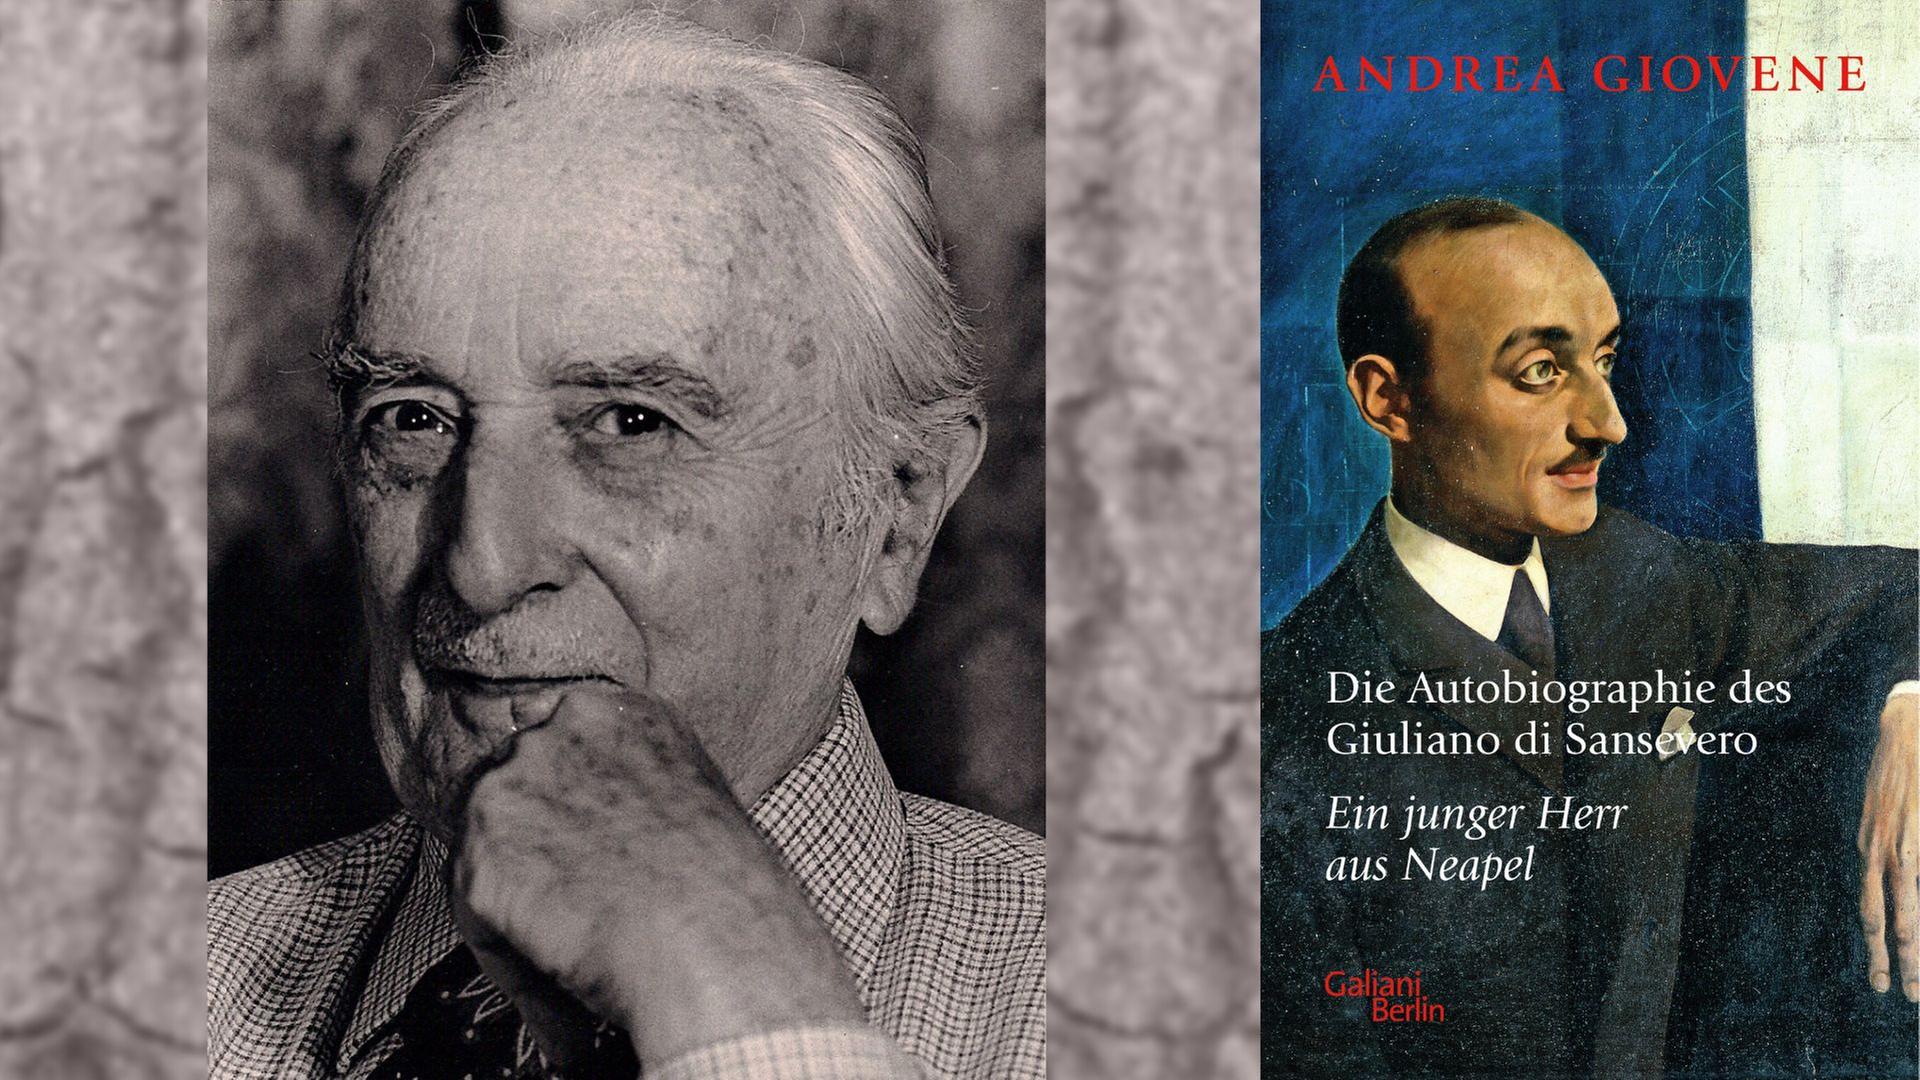 Andrea Giovene: "Die Autobiographie des Giuliano di Sansevero"